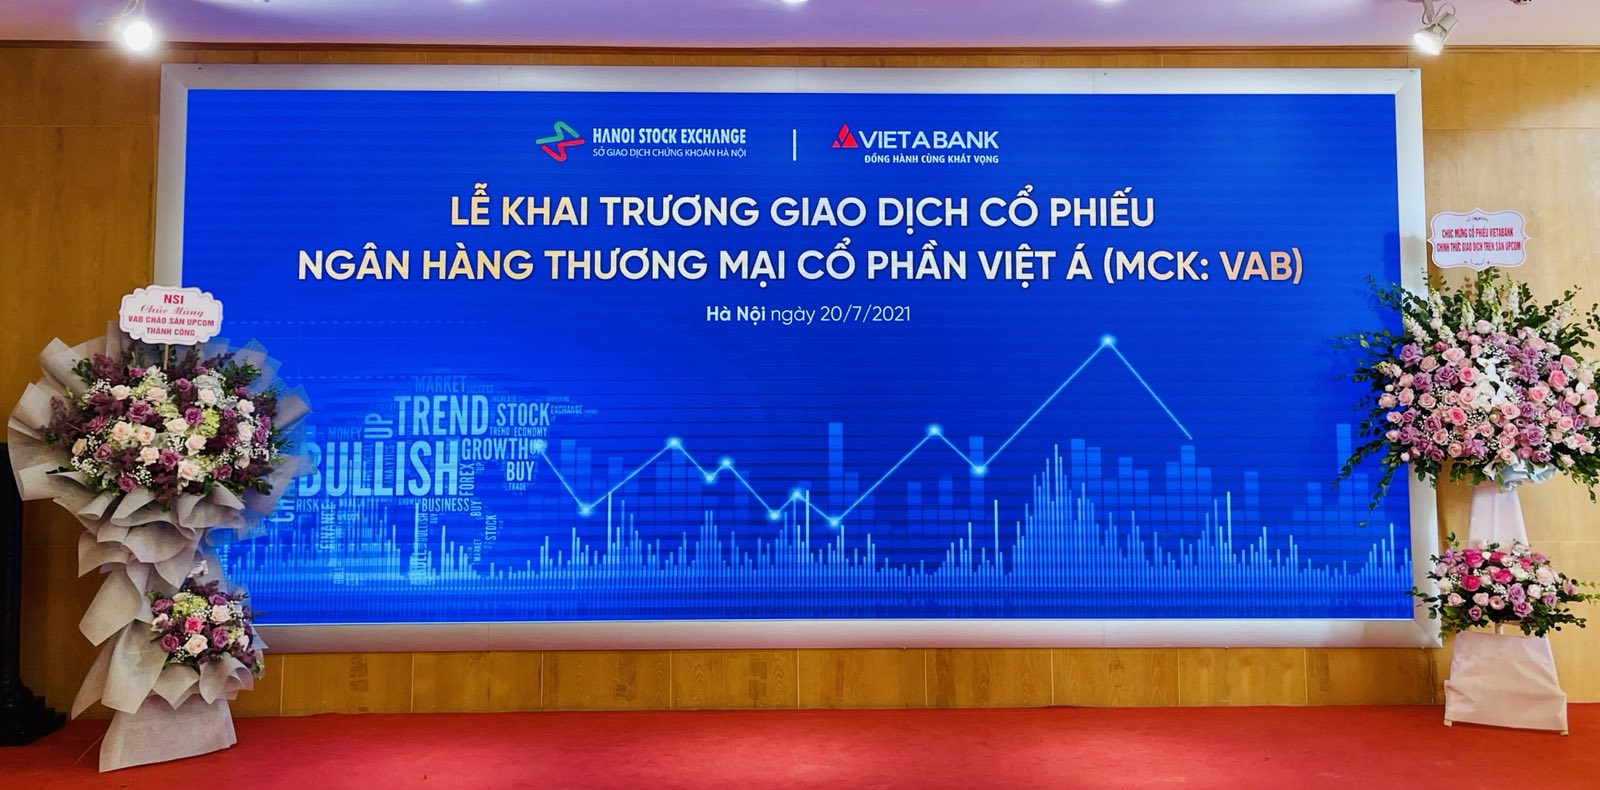 “Tân binh” VAB của VietABank chính thức chào sàn, giá tăng kịch trần 40% - Ảnh 1.